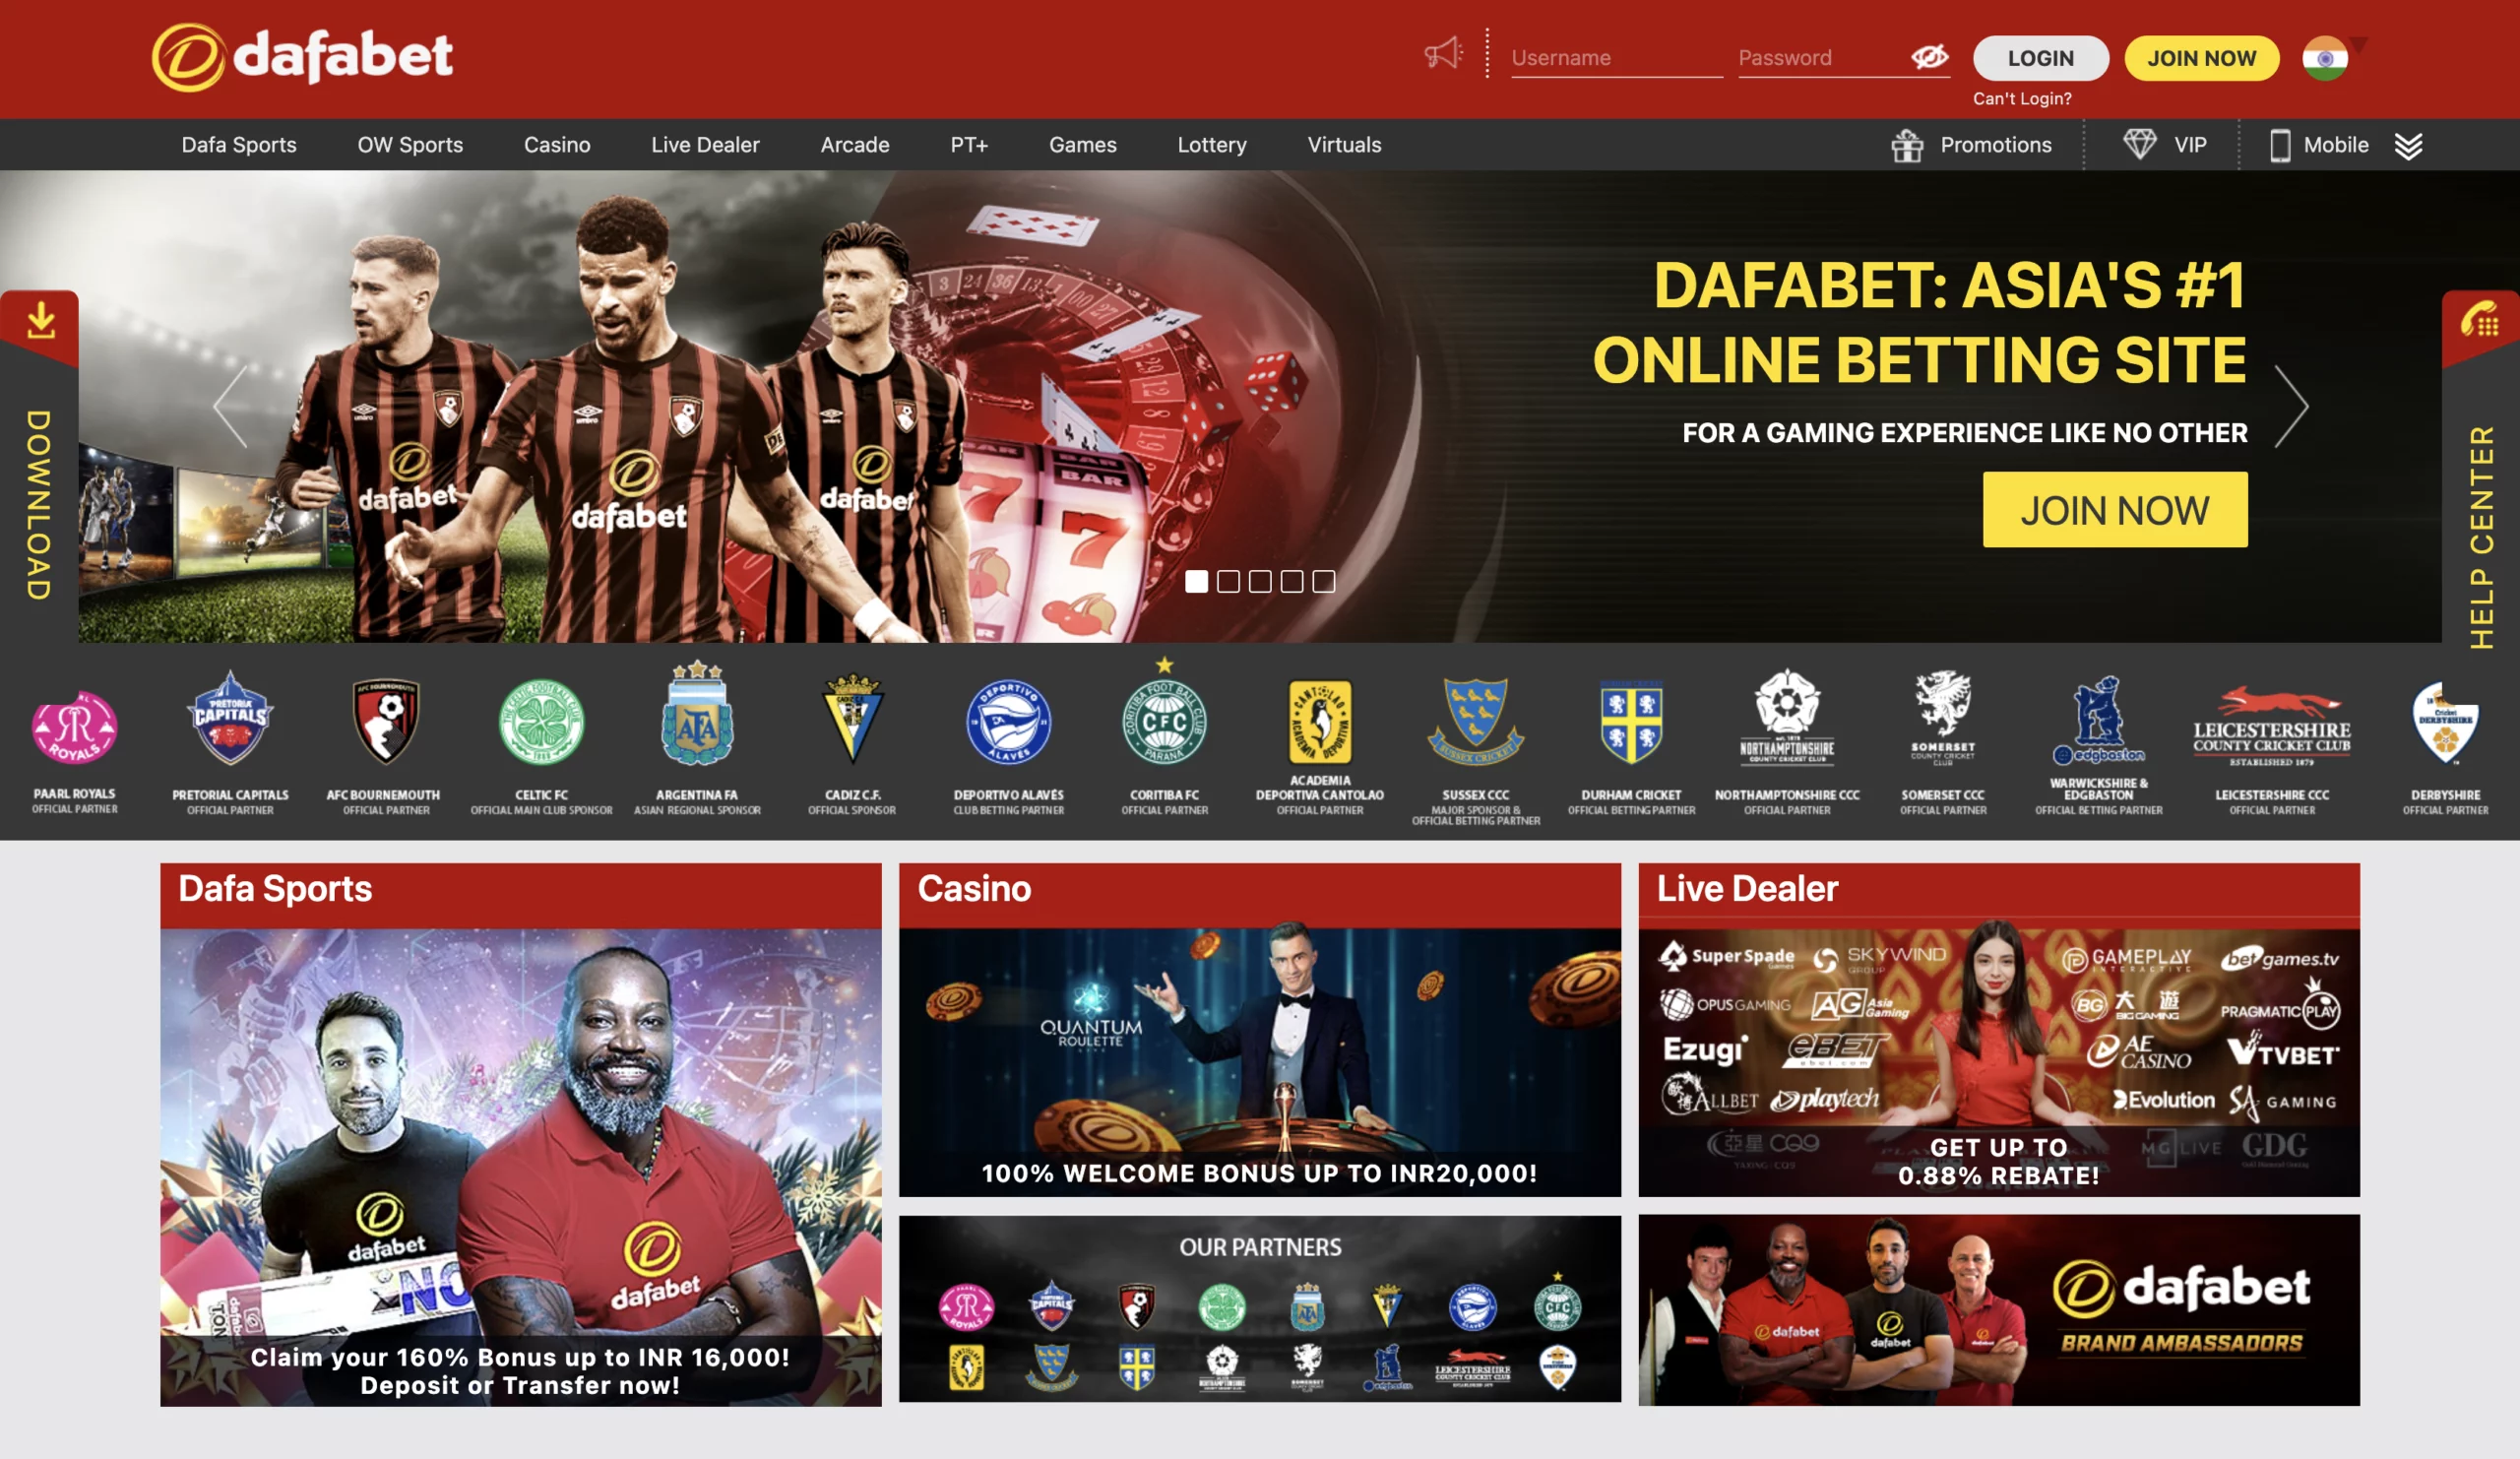 Dafabet Casino homepage.